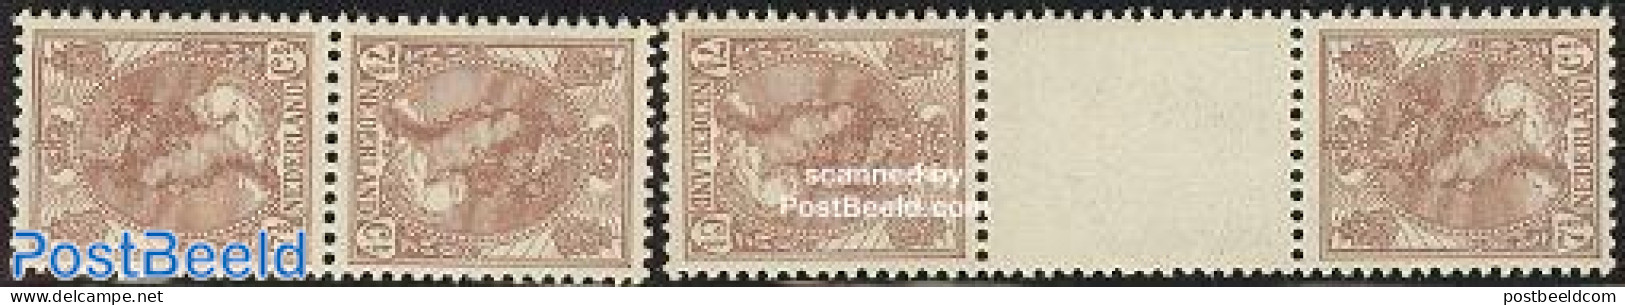 Netherlands 1924 Definitives Tete Beche 2 Pairs, Mint NH - Neufs